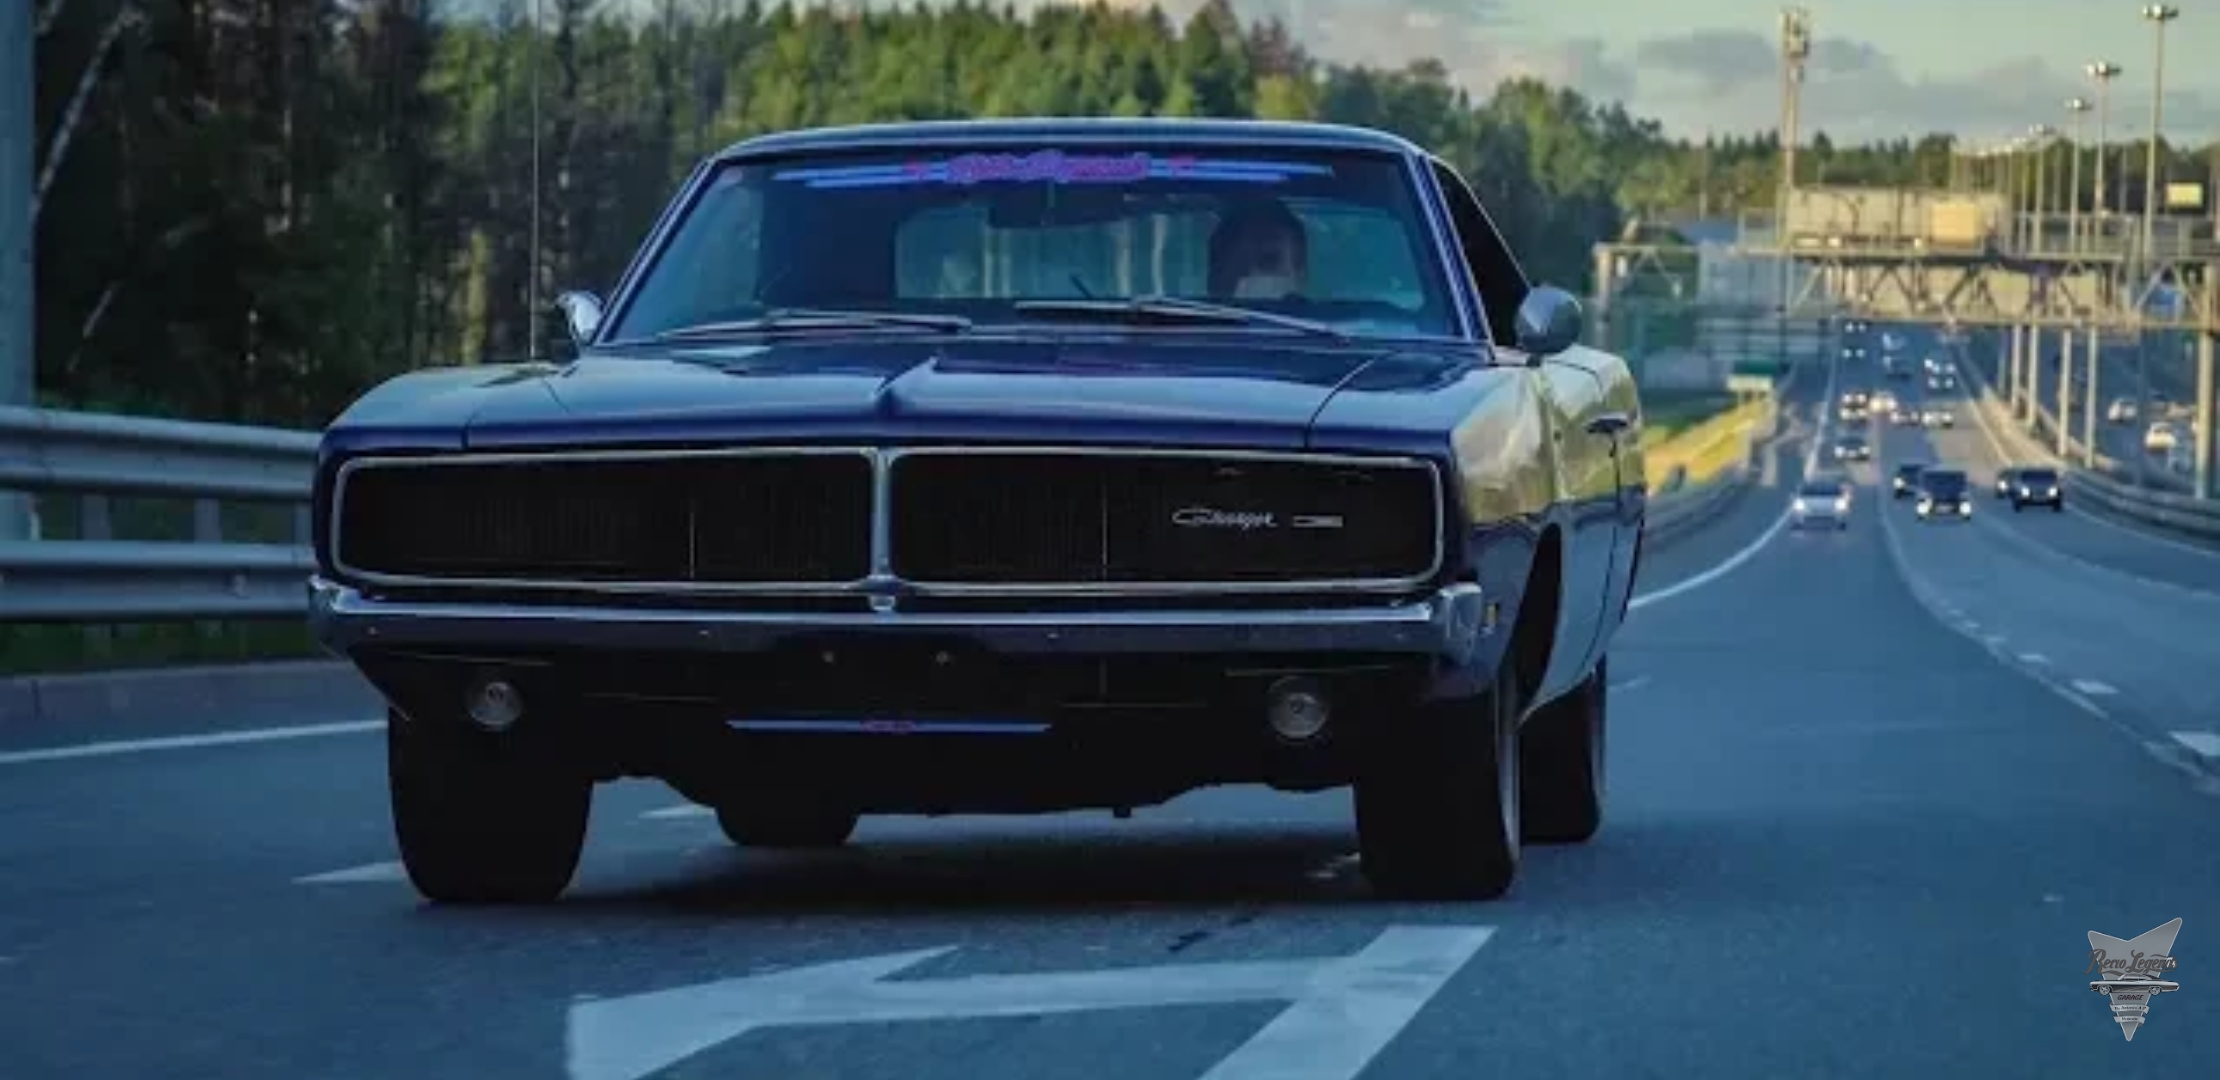 Анонс видео-теста Обзор Dodge Charger 69 года! 